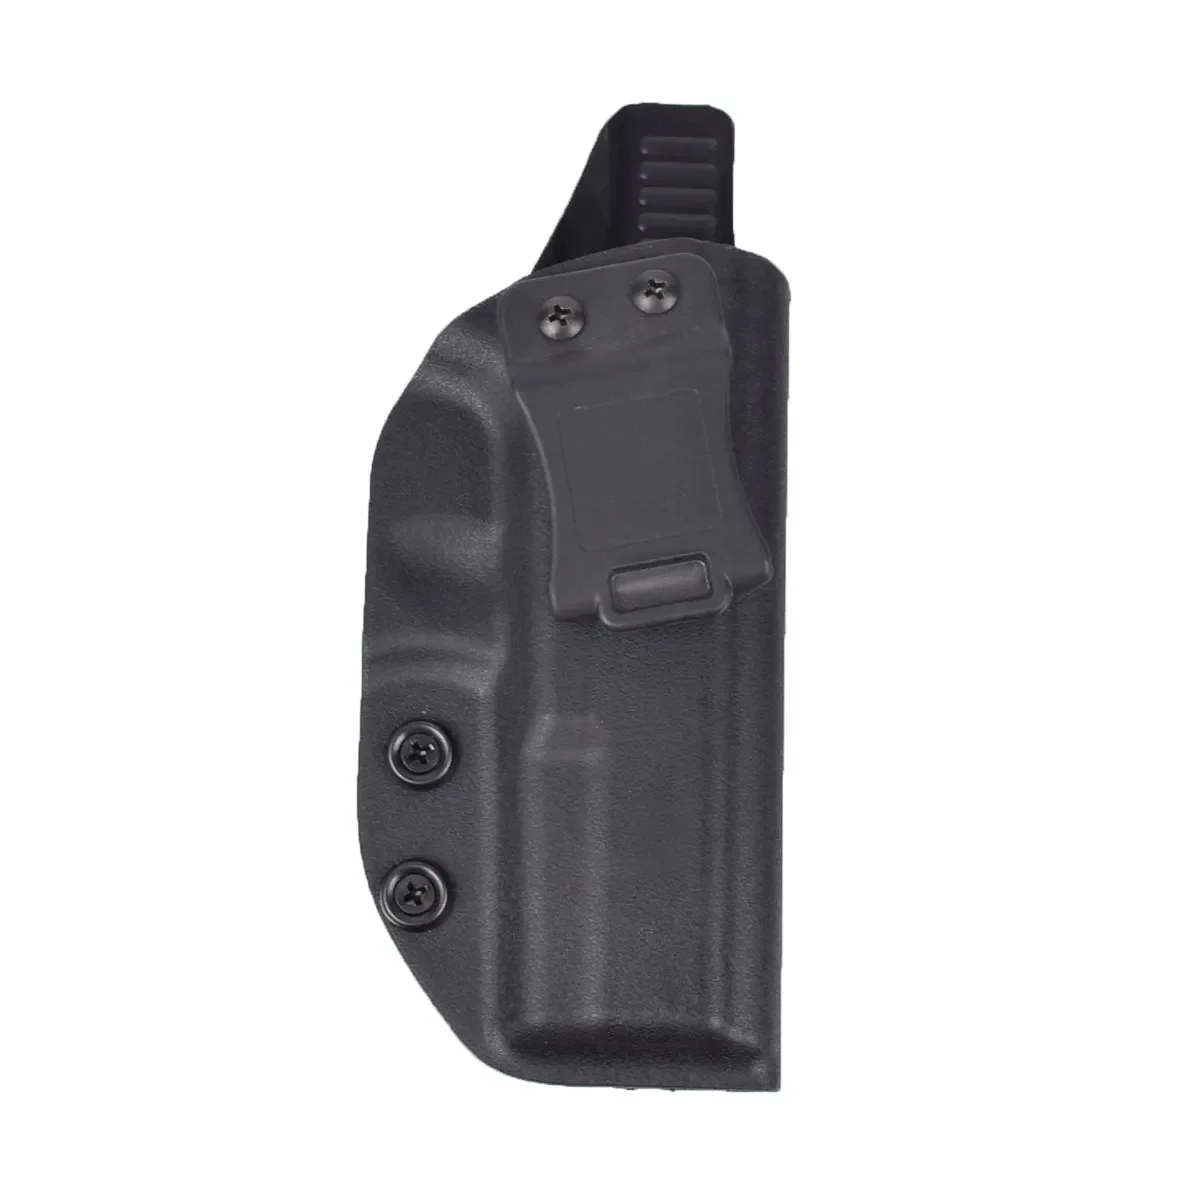 

Кобура для пистолета Glock 17 22 IWB Kydex Glock31 (Gen 3-4), внутренний пояс с зажимом для ремня 9x19 мм, для охоты, тактический